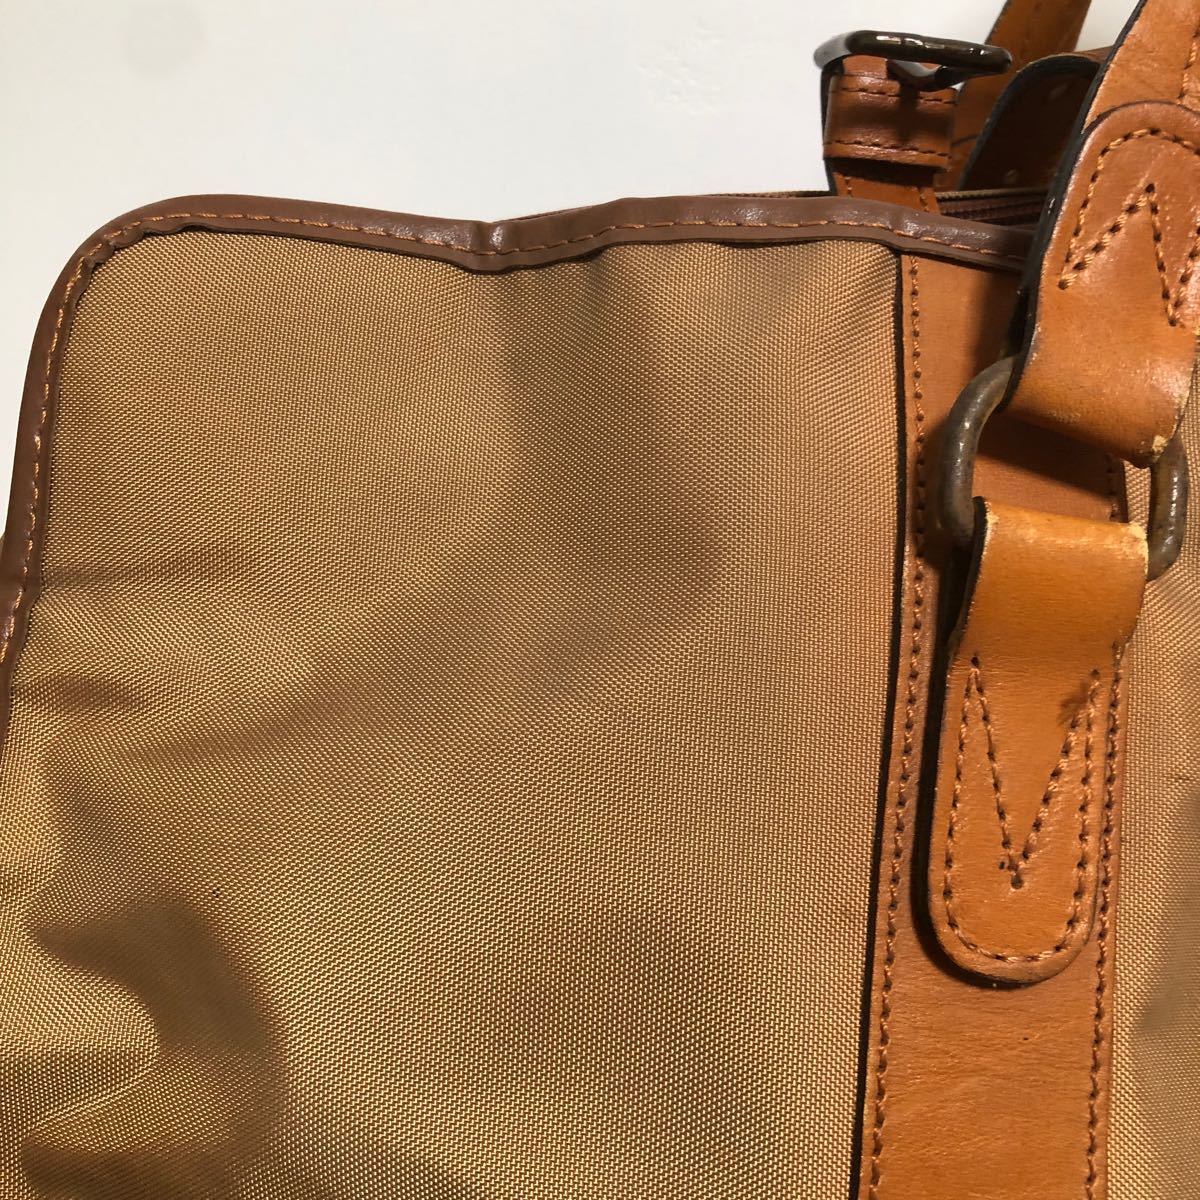  мир 170* LANCEL Lancel сумка "Boston bag" путешествие сумка большая вместимость большой мужской бежевый 